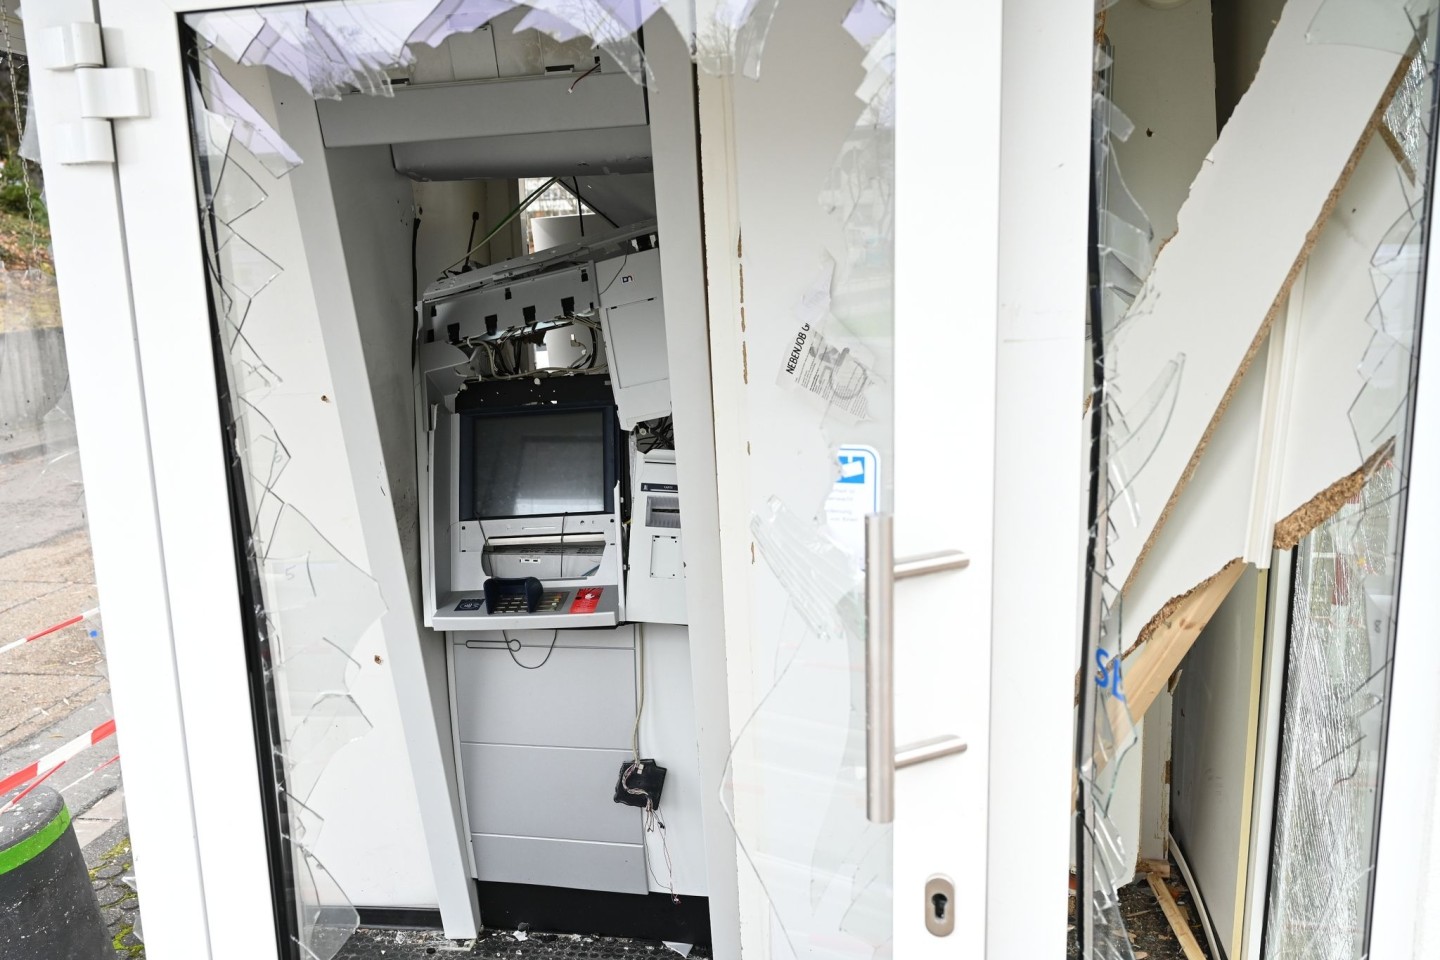 Völlig zerstört: So sieht ein freistehender Geldautomat der Volksbank Mainz nach einem Angriff aus.